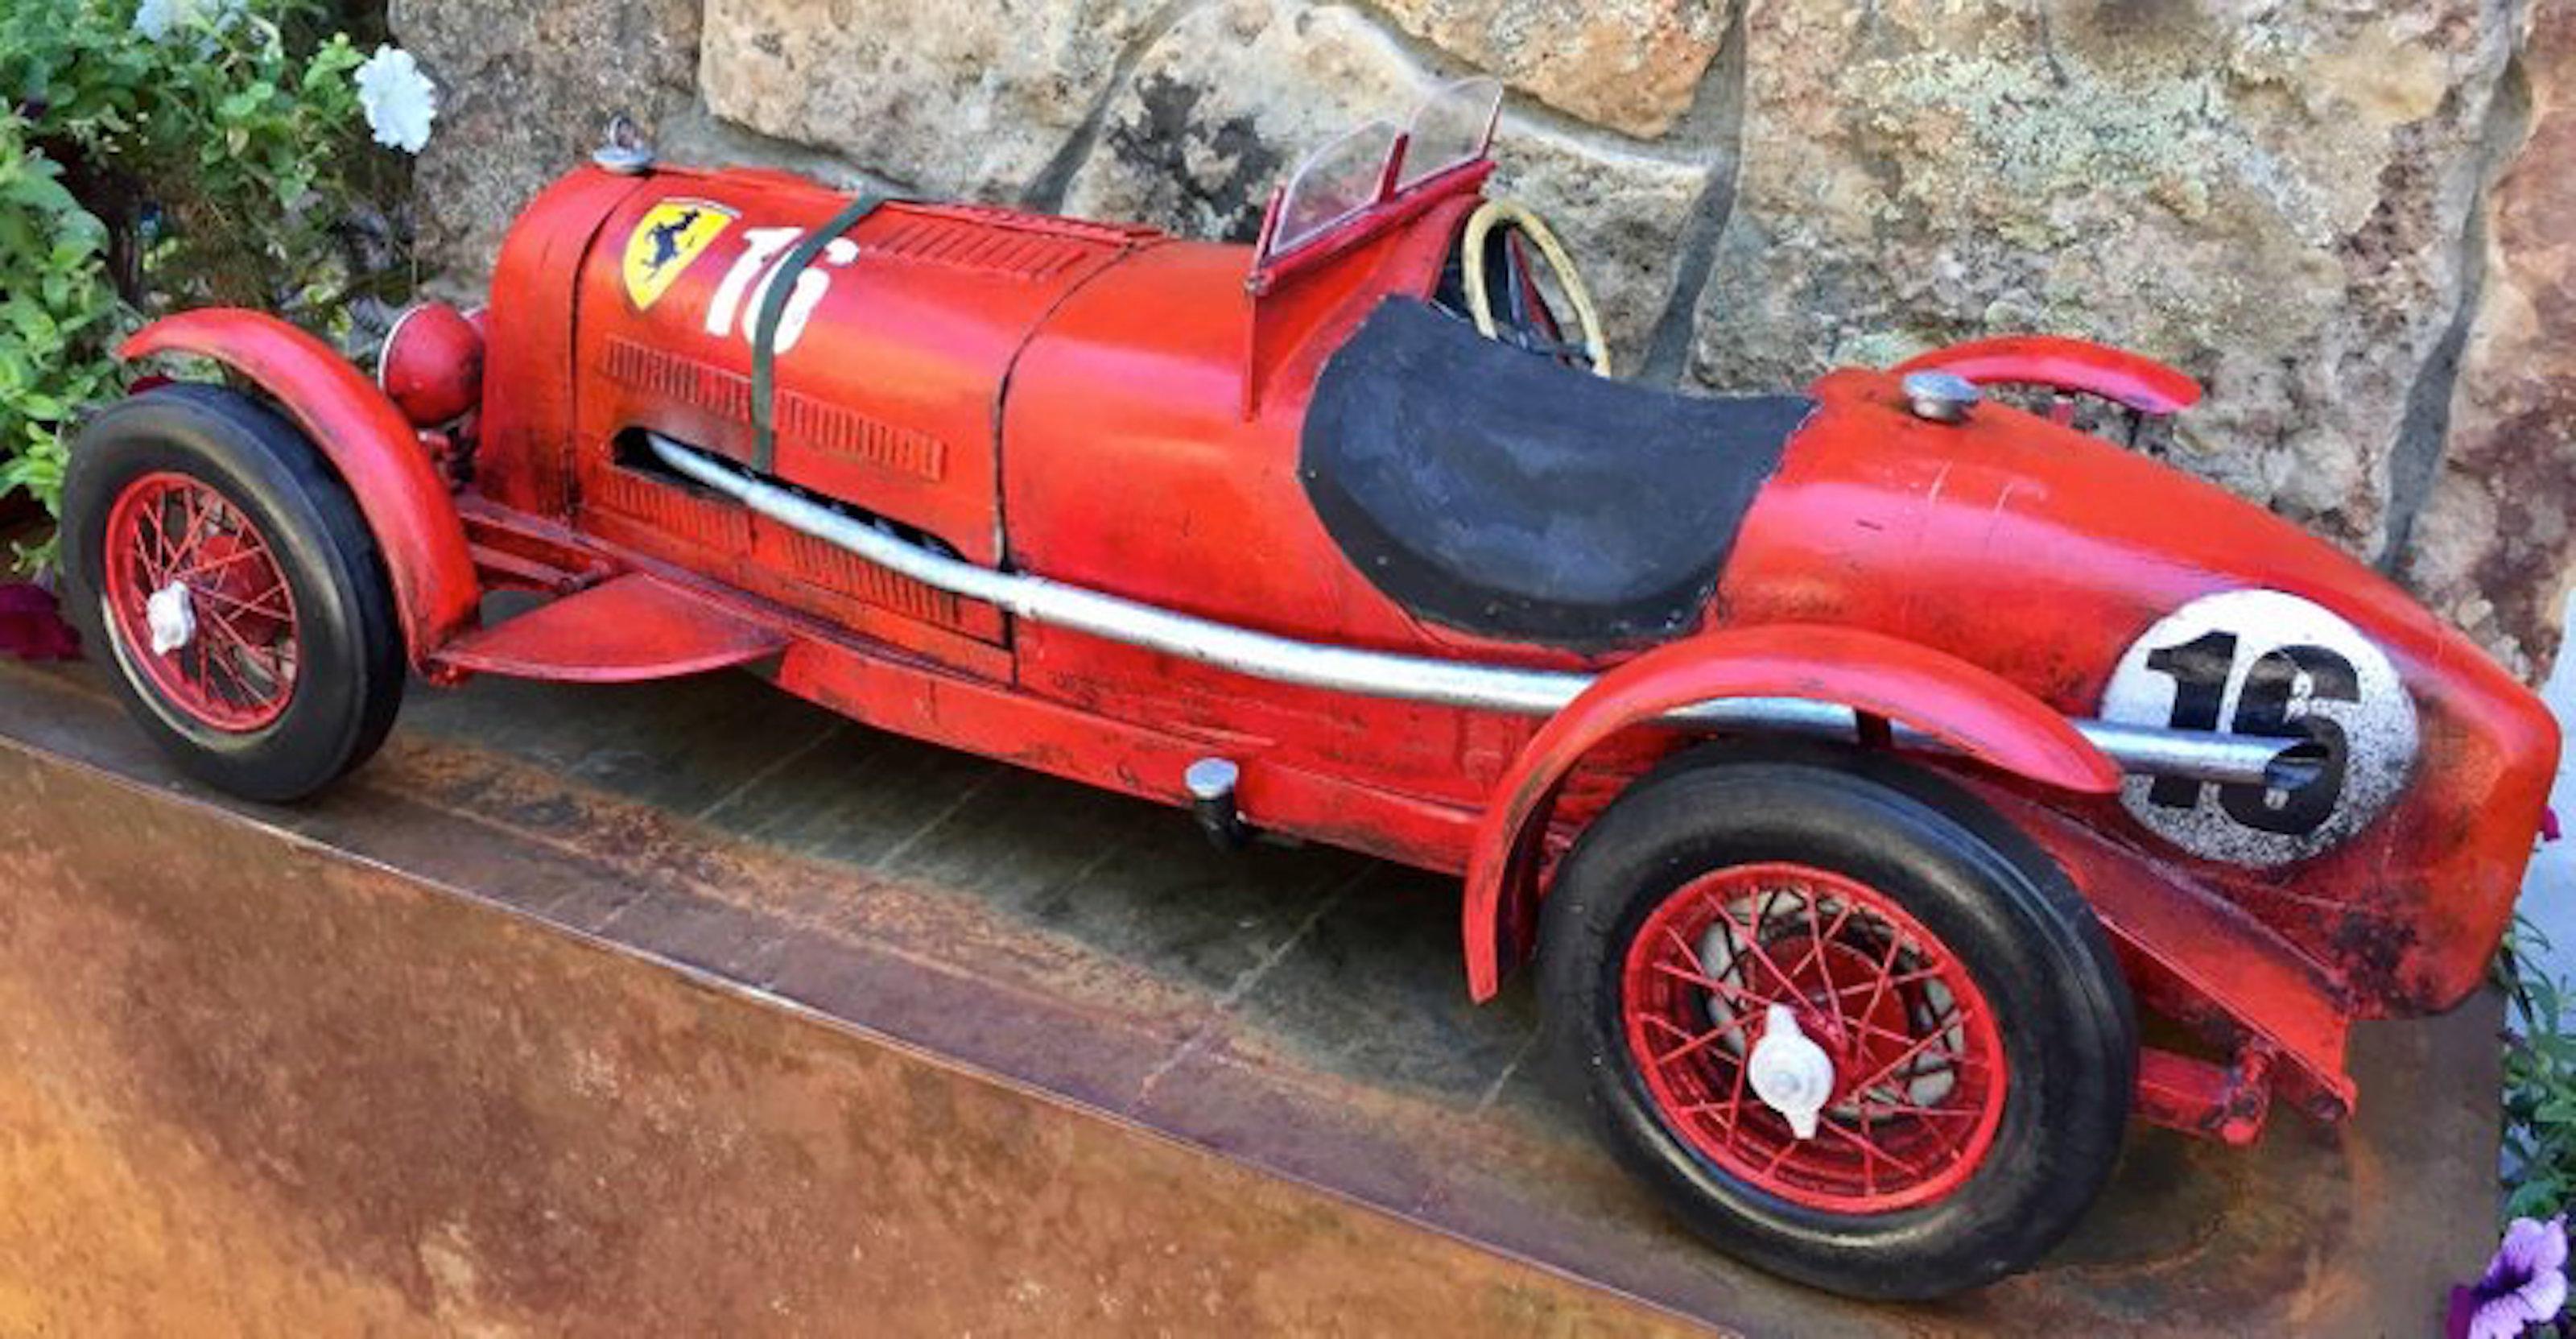 1933 Scuderia Ferrari Monza - Pop Art Sculpture by Paul Jacobsen